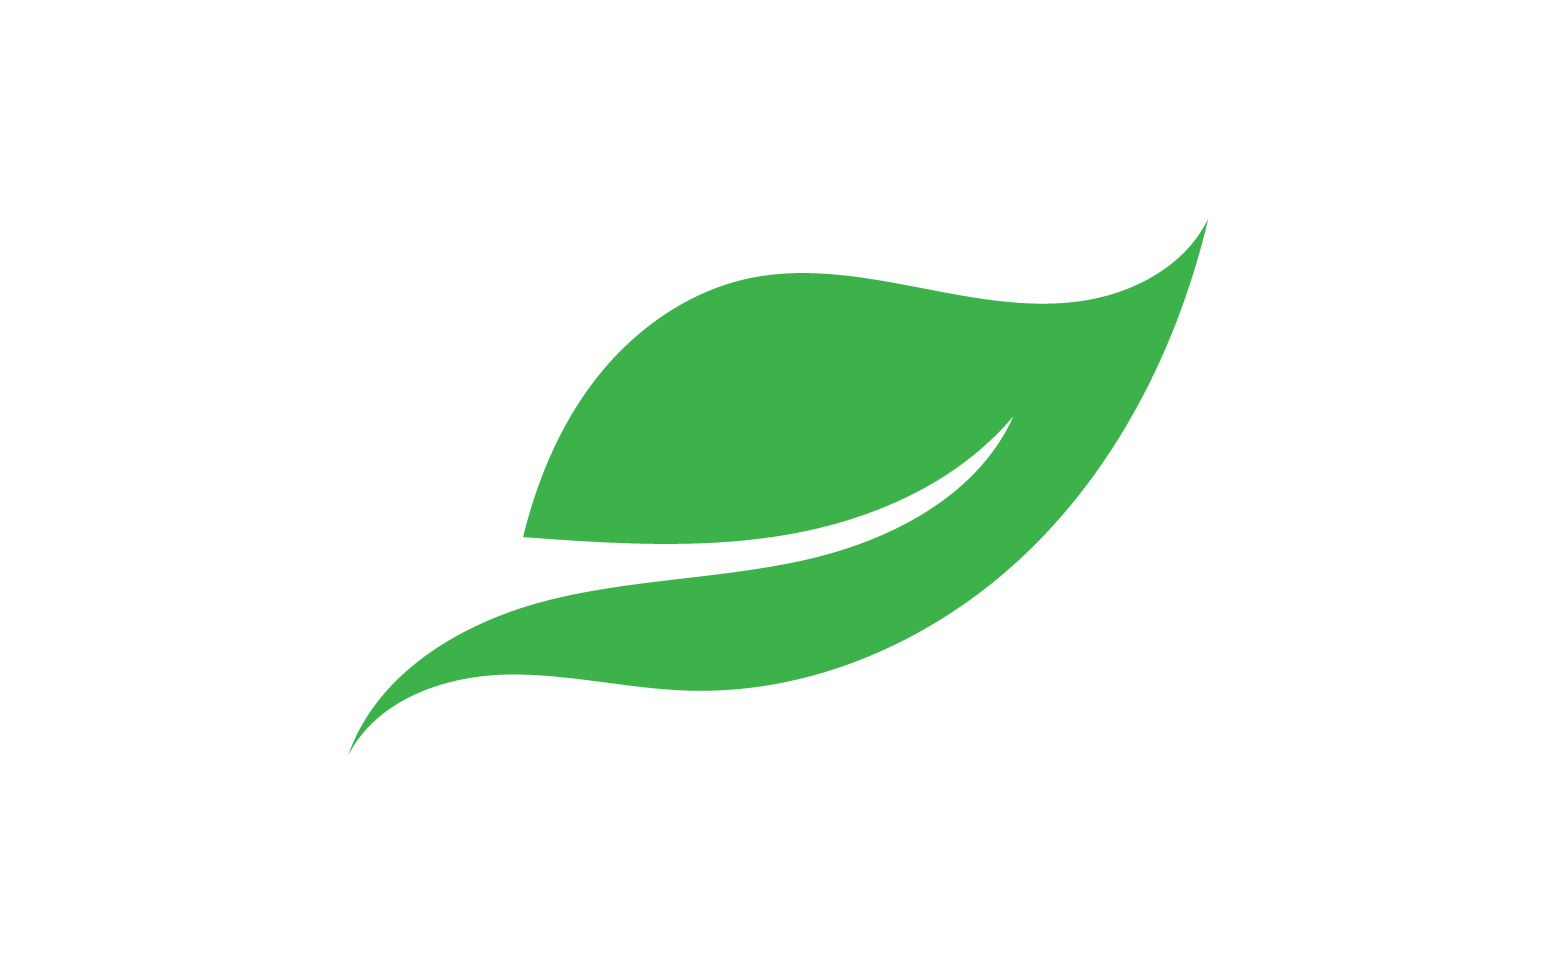 Clover leaf green element icon logo vector v12